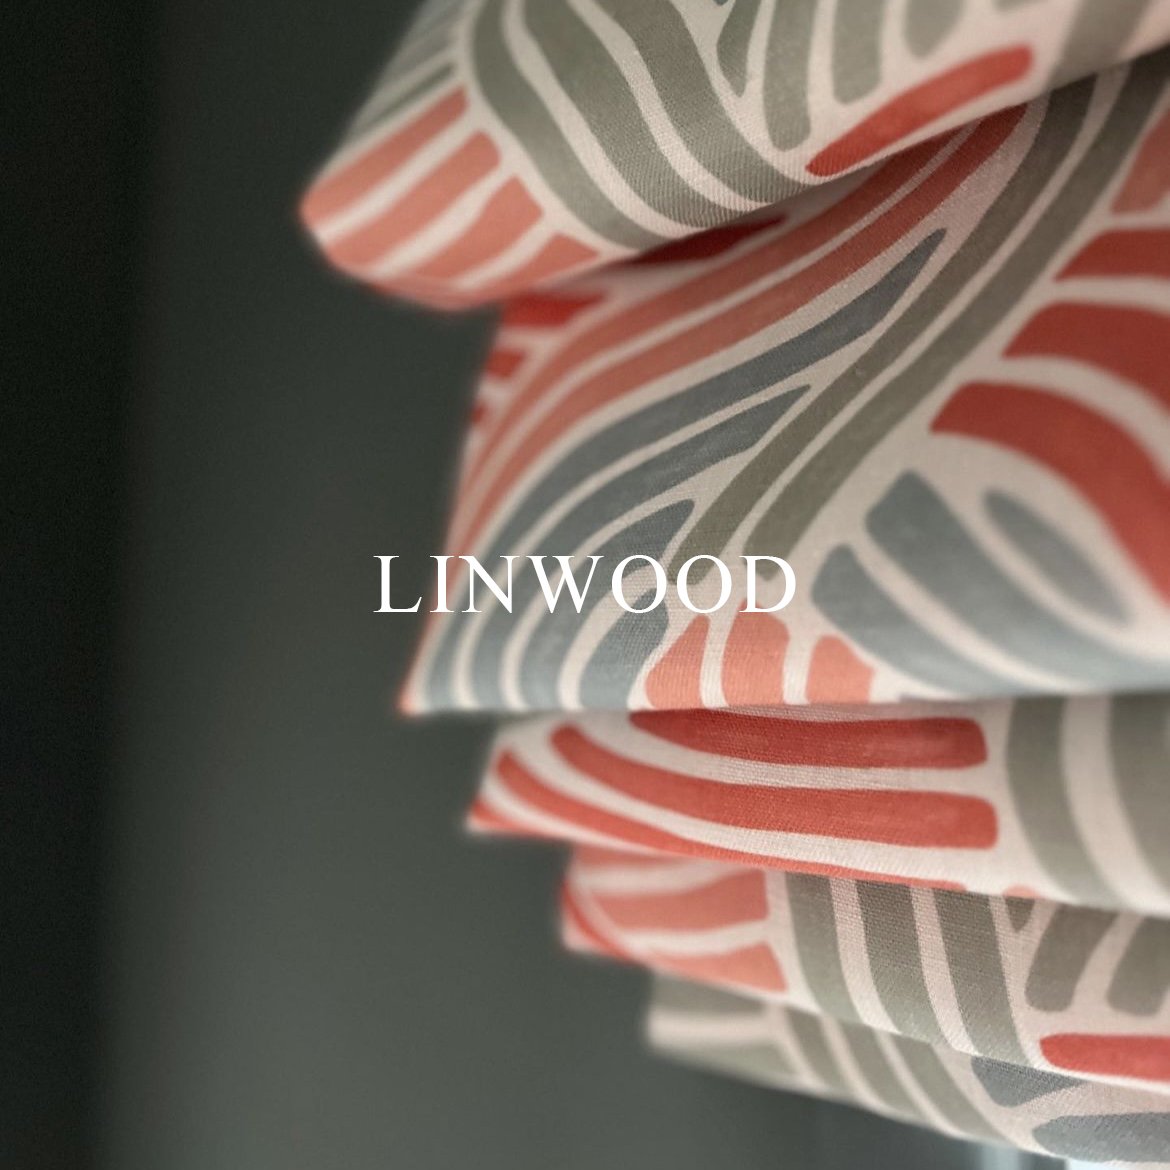 Linwood4.jpg